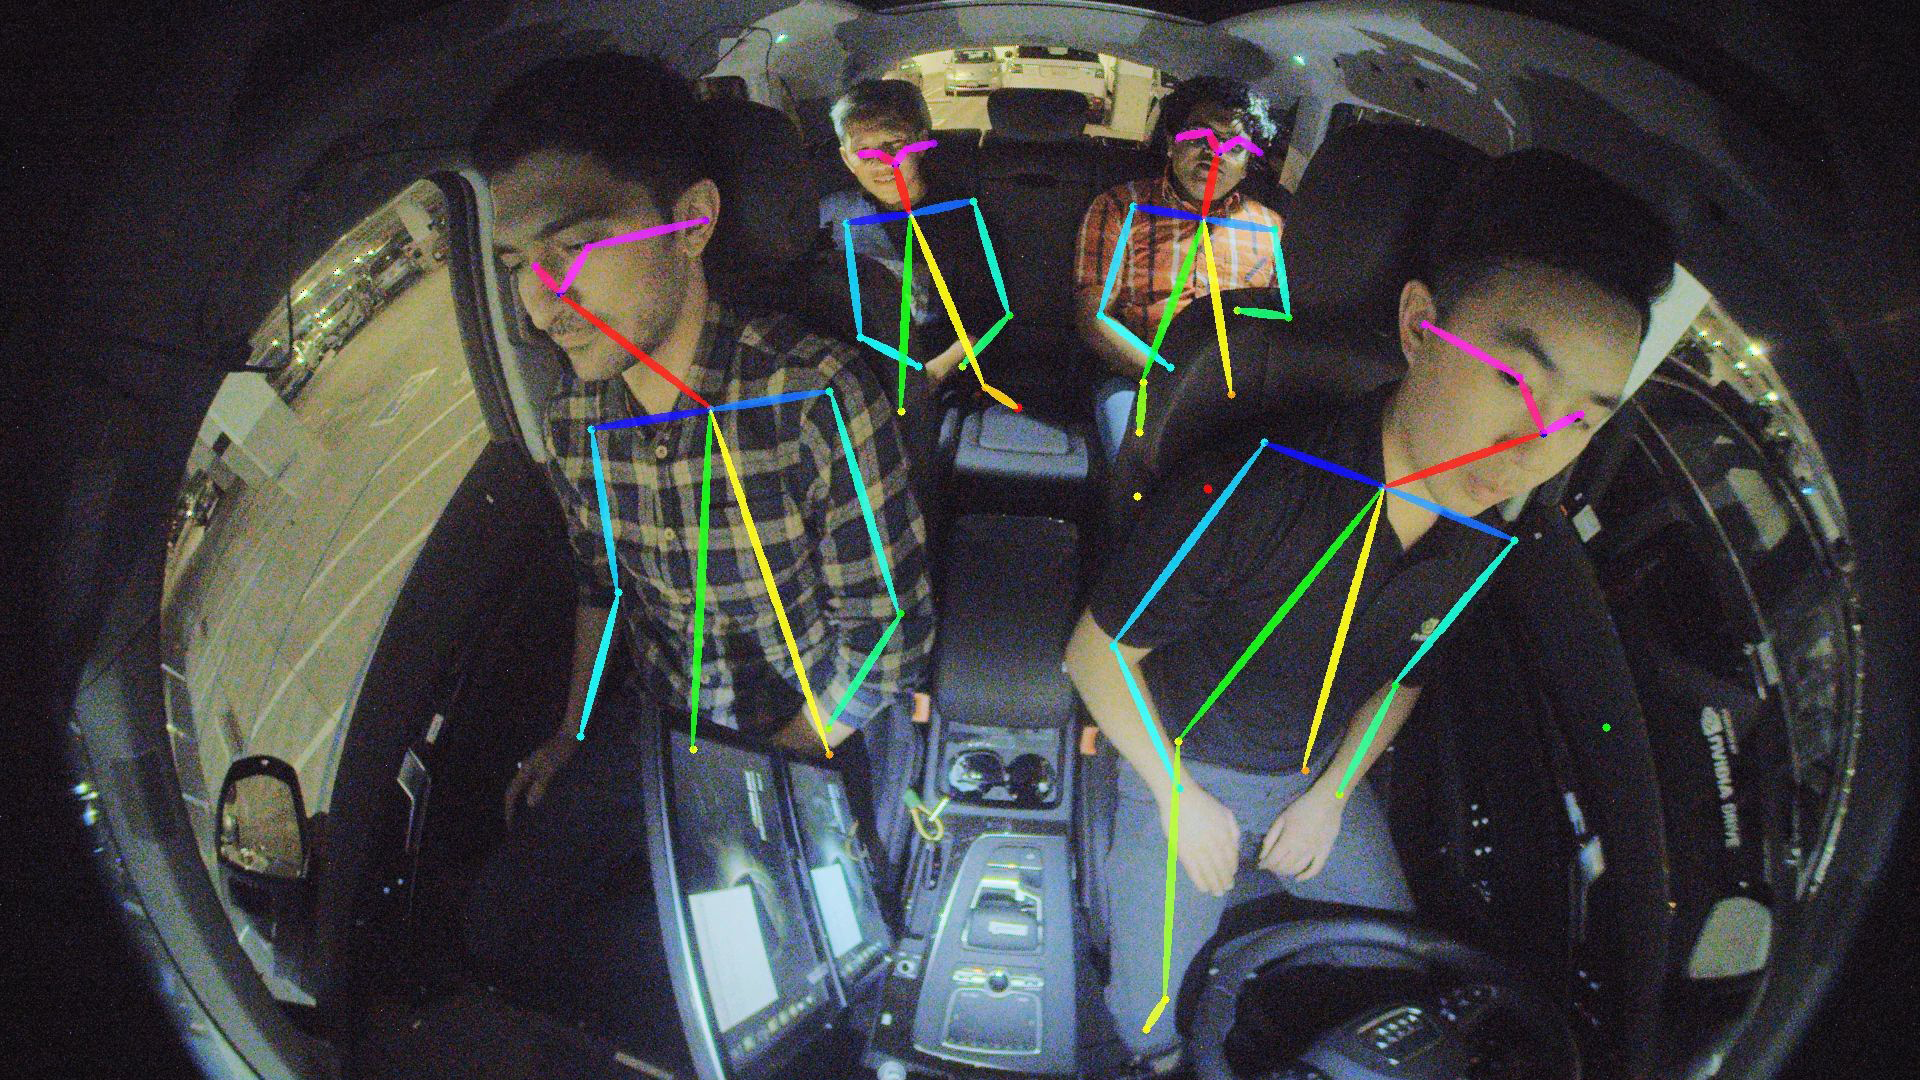 DRIVE IX provides interior sensing 